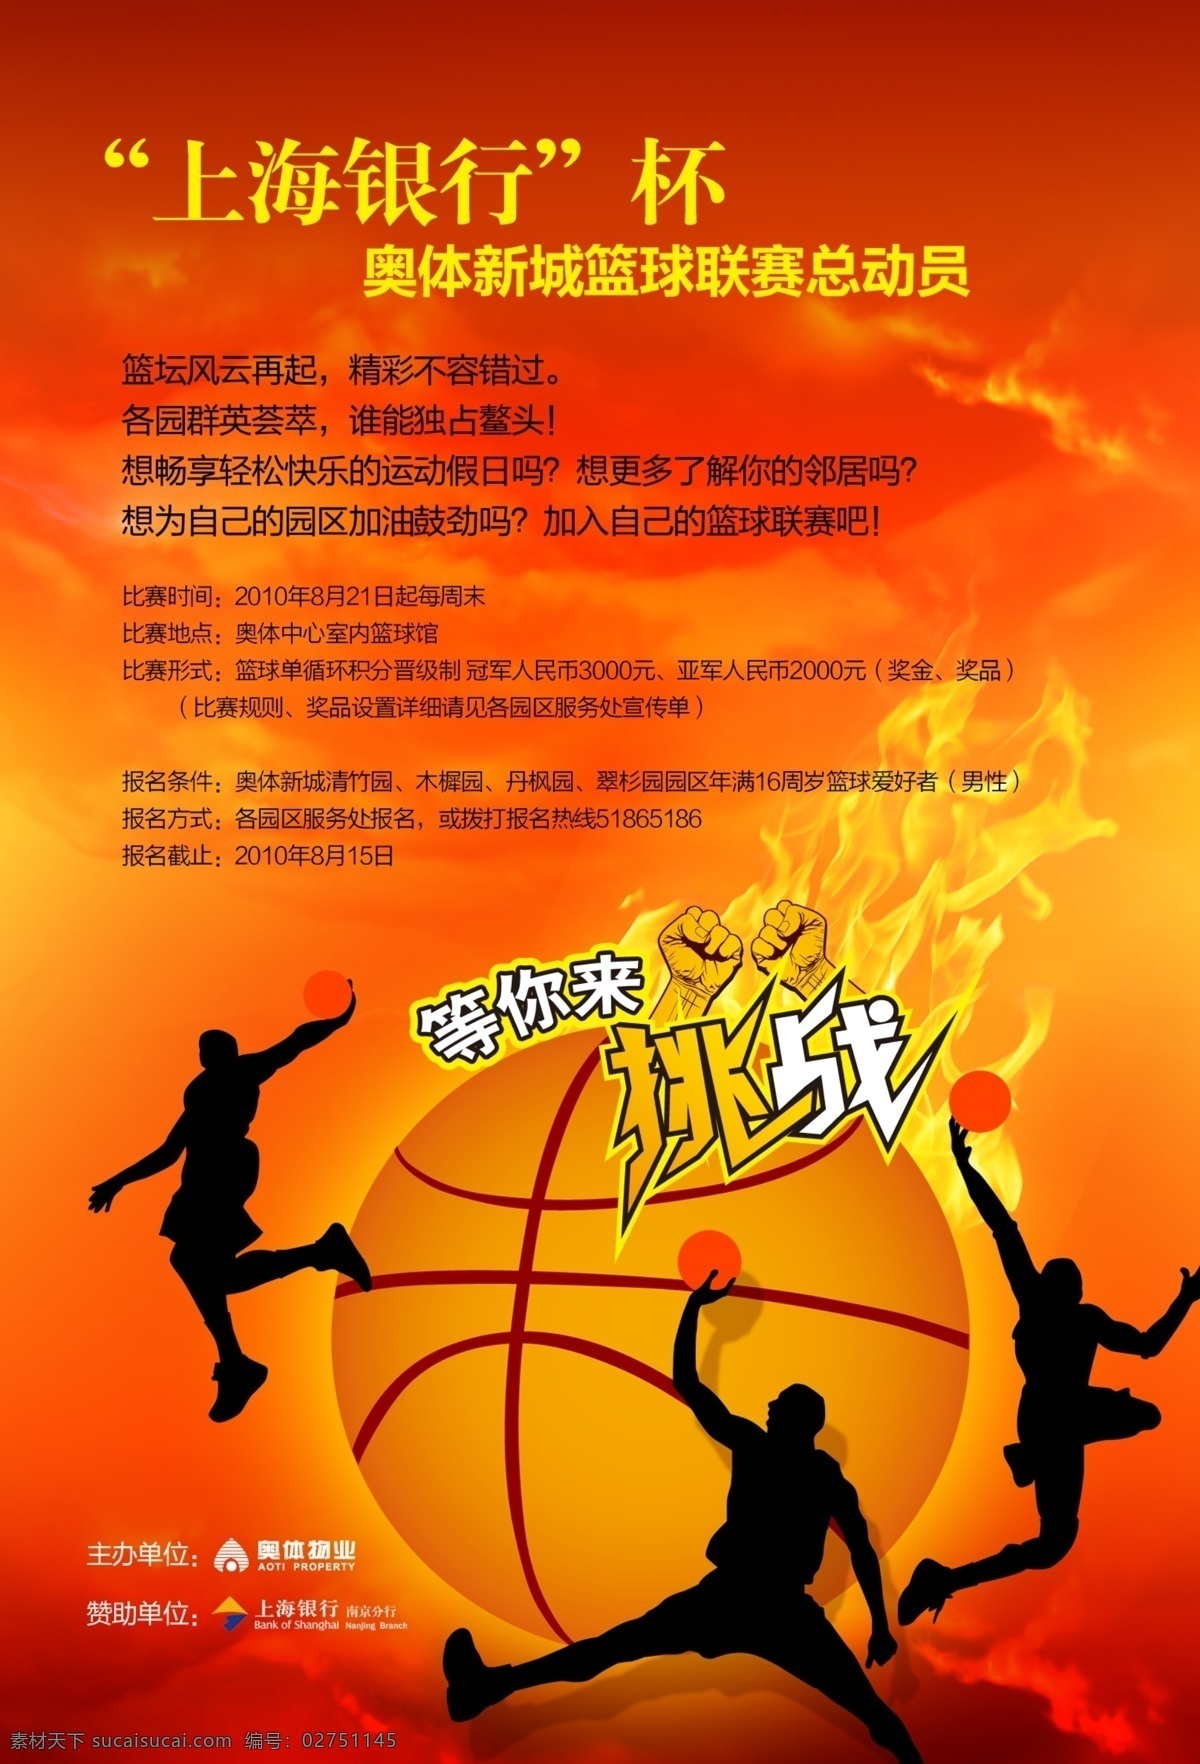 篮球 比赛 海报 红底 火 剪影 篮球比赛海报 人 人物 云 模板下载 云彩 其他海报设计